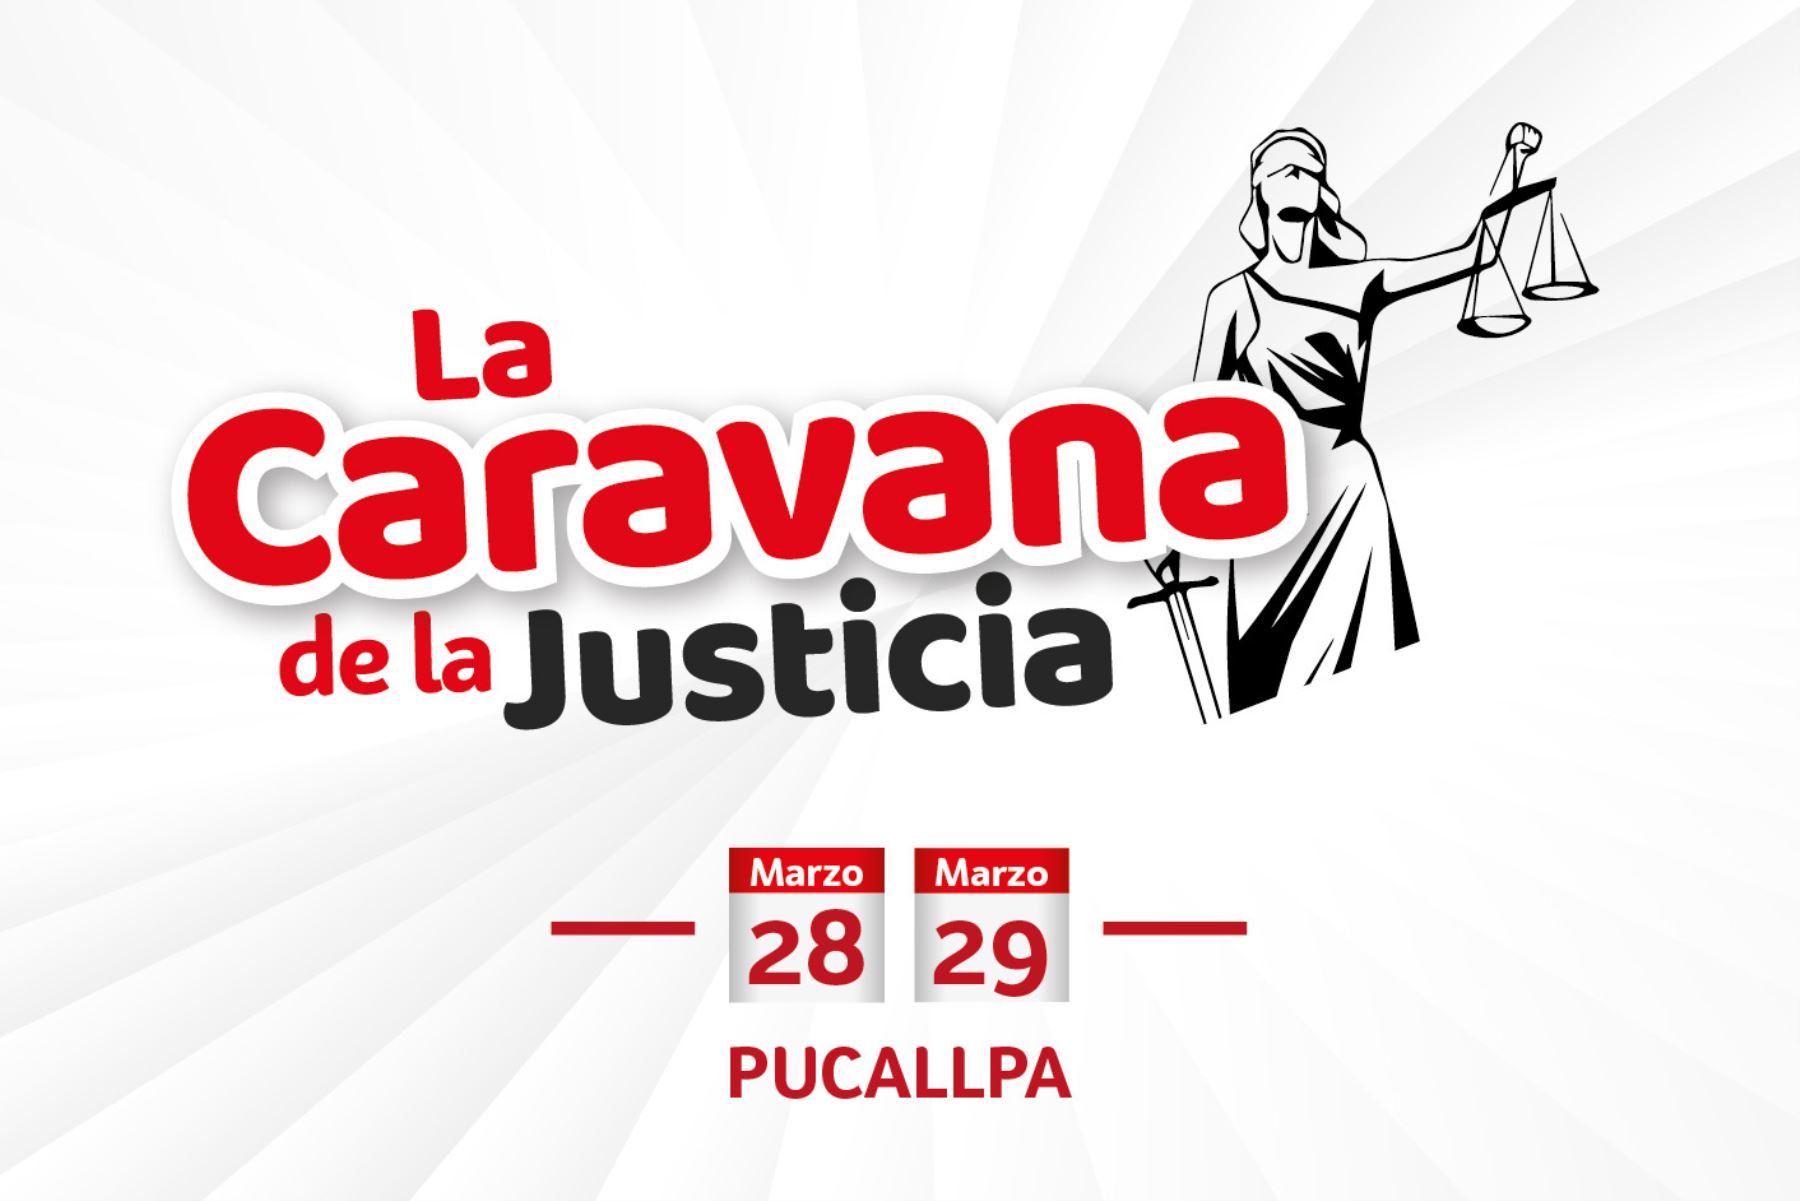 Las actividades de La Caravana de la Justicia en Pucallpa estarán dirigidas a escolares, universitarios, la sociedad civil y los pueblos indígenas.